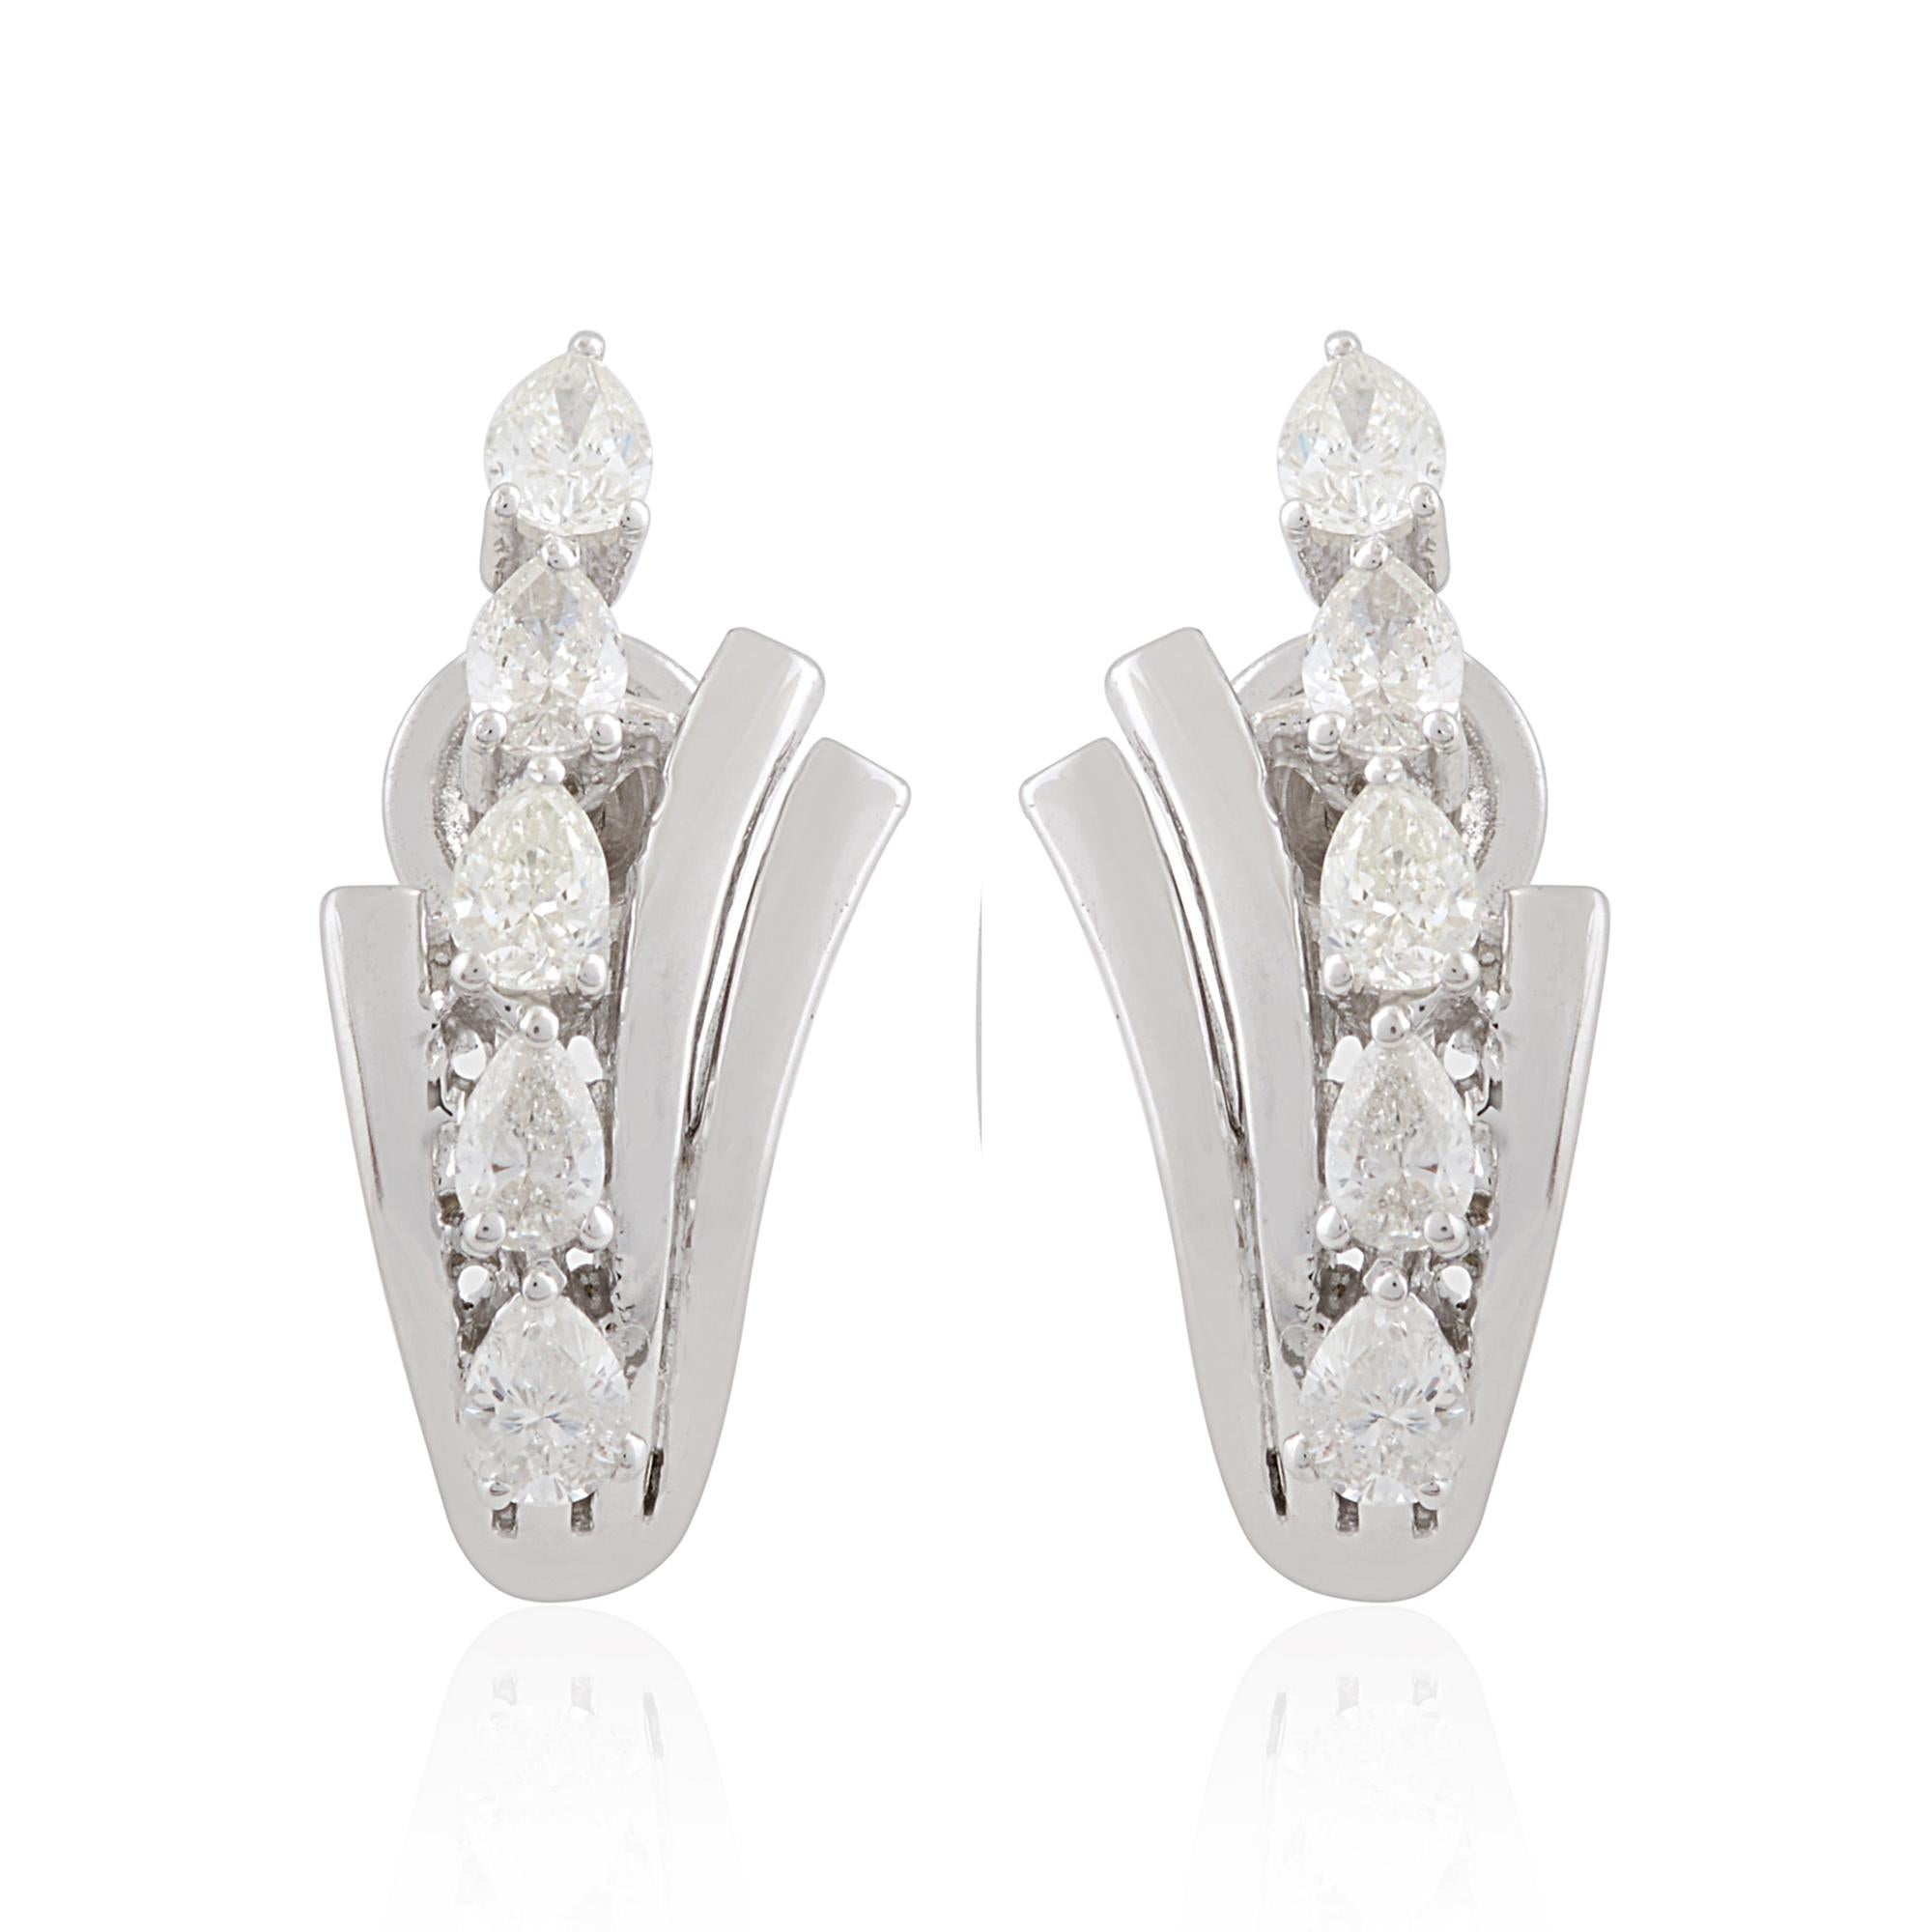 Jeder Ohrring enthält einen sorgfältig ausgewählten Diamanten im Birnenschliff, der für seine einzigartige und verführerische Form bekannt ist, mit einem Gesamtkaratgewicht von 0,6 Karat. Die Diamanten sind zart in die schlanke Wölbung des Halbrings